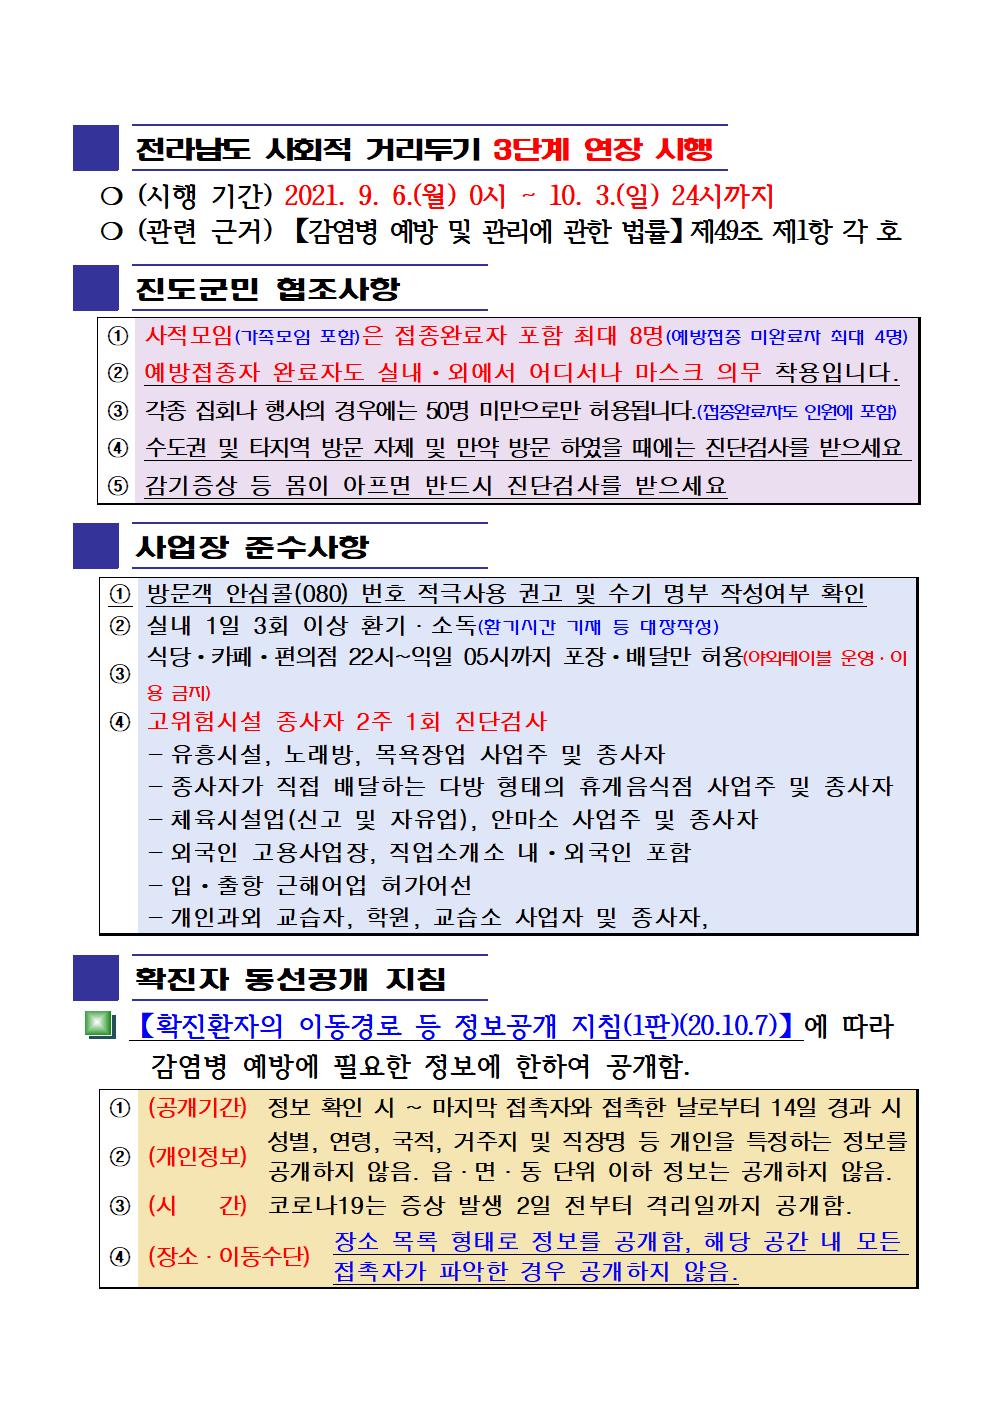 2021년 코로나19 대응 일일상황보고(9월 25일 24시 기준) 첨부#2